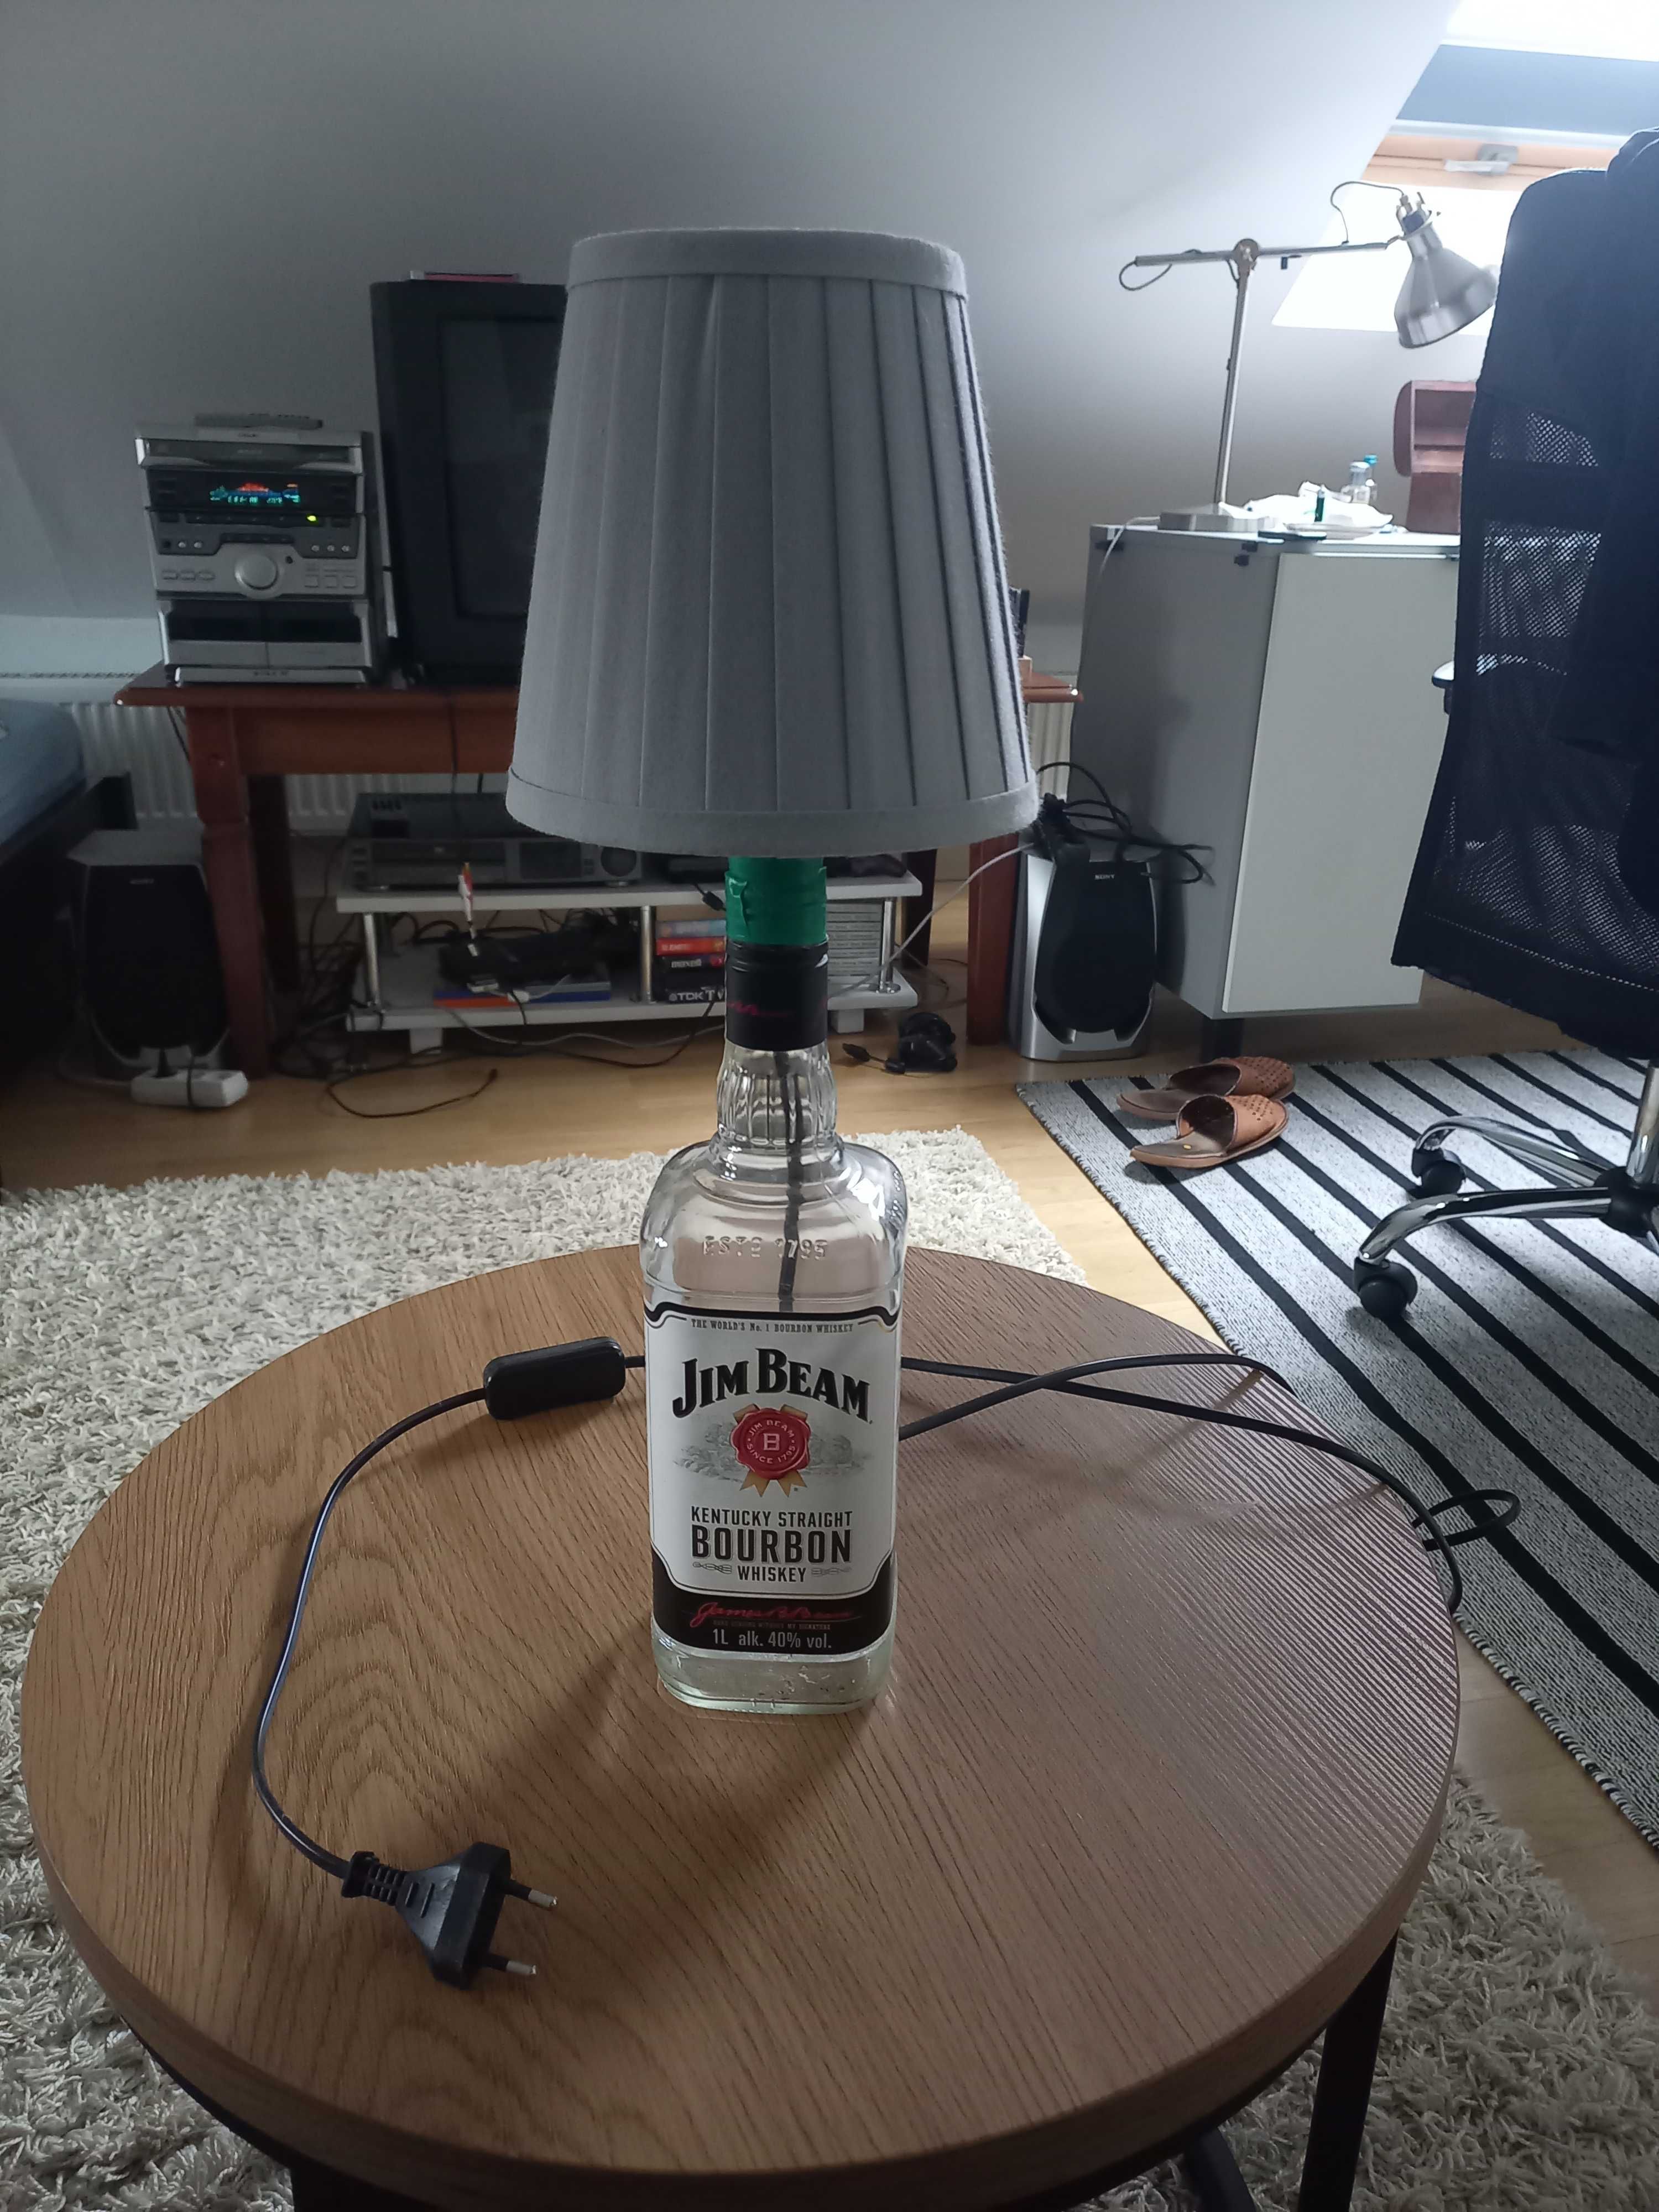 Lampka z butelki Jeam Beam